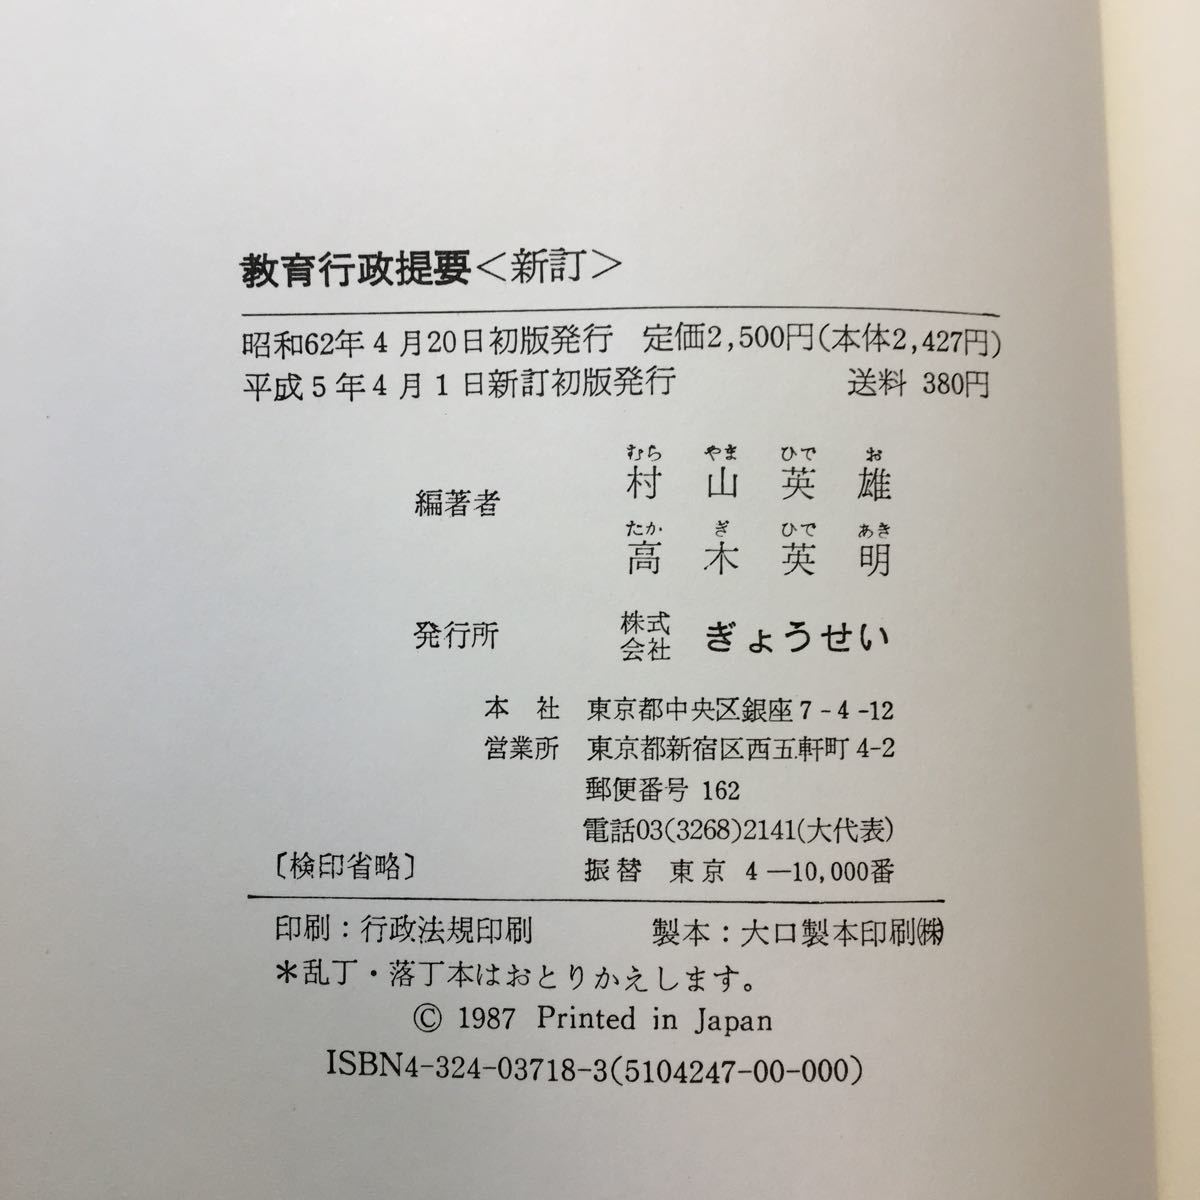 zaa-242♪教育行政提要 ハードカバー 1993/5/1 村山 英雄 (編集), 高木 英明 (編集)